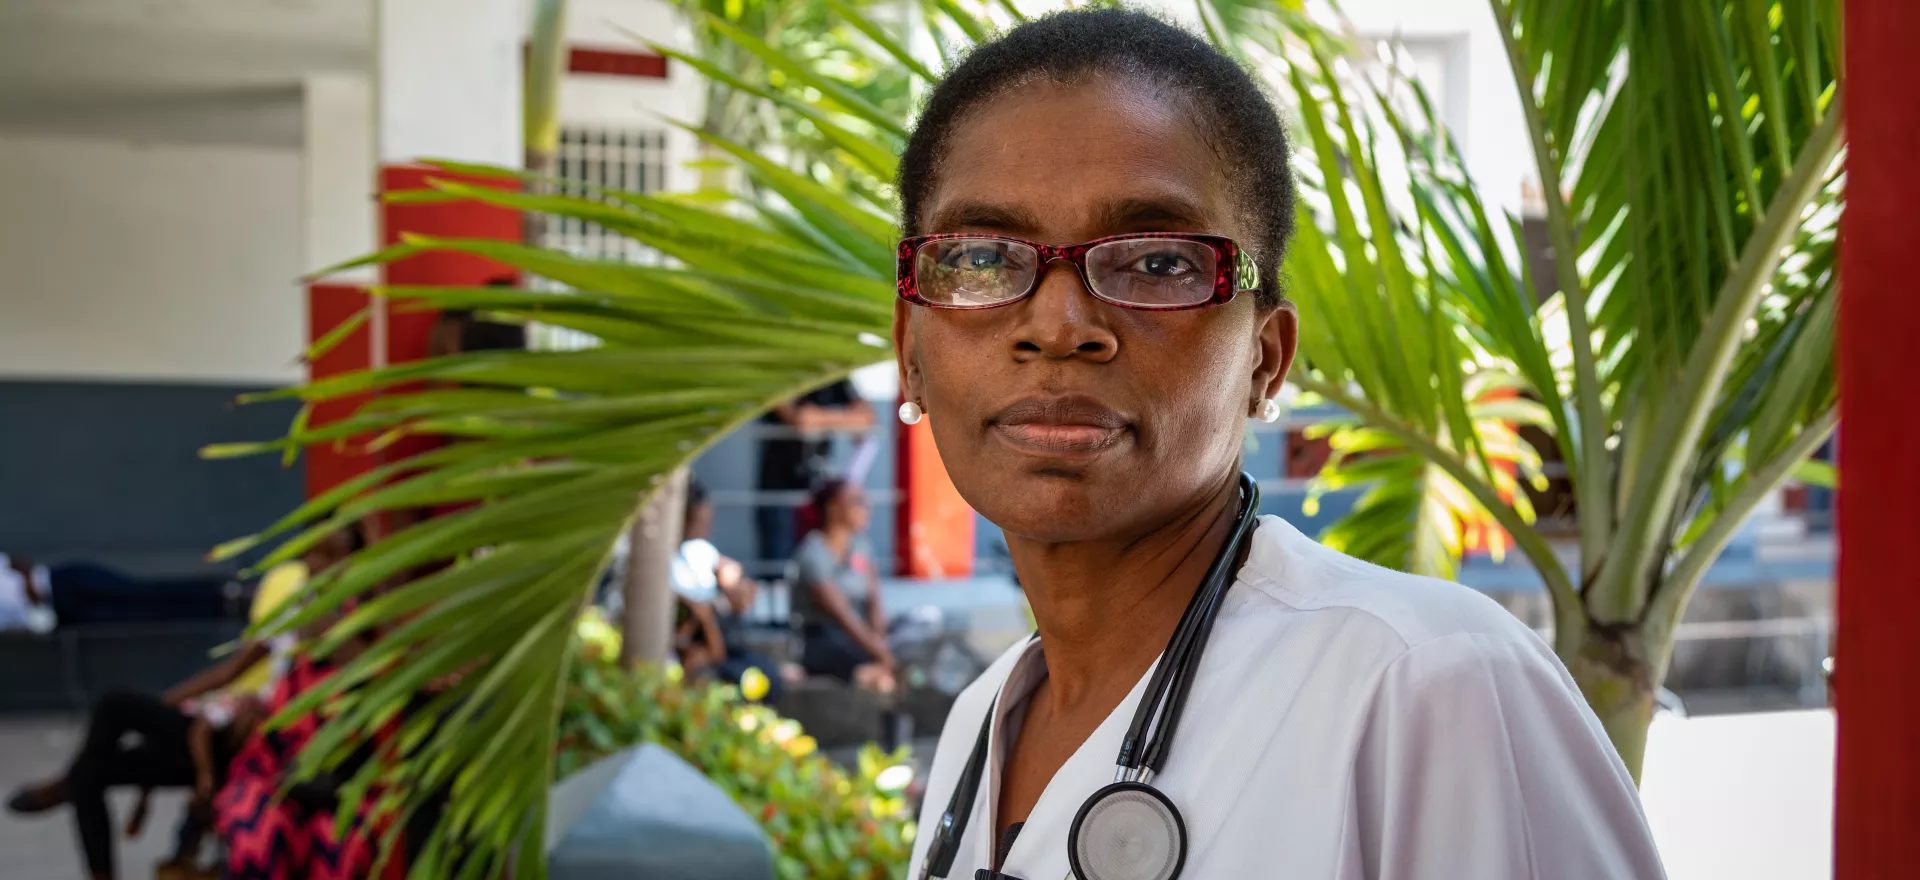 Mona Yvrose Jean-Claude, Director of Sacré-Coeur health centre, poses for a portrait outside Dispensaire du Sacré-Coeur in the Charpentier district of Les Cayes, Haiti.